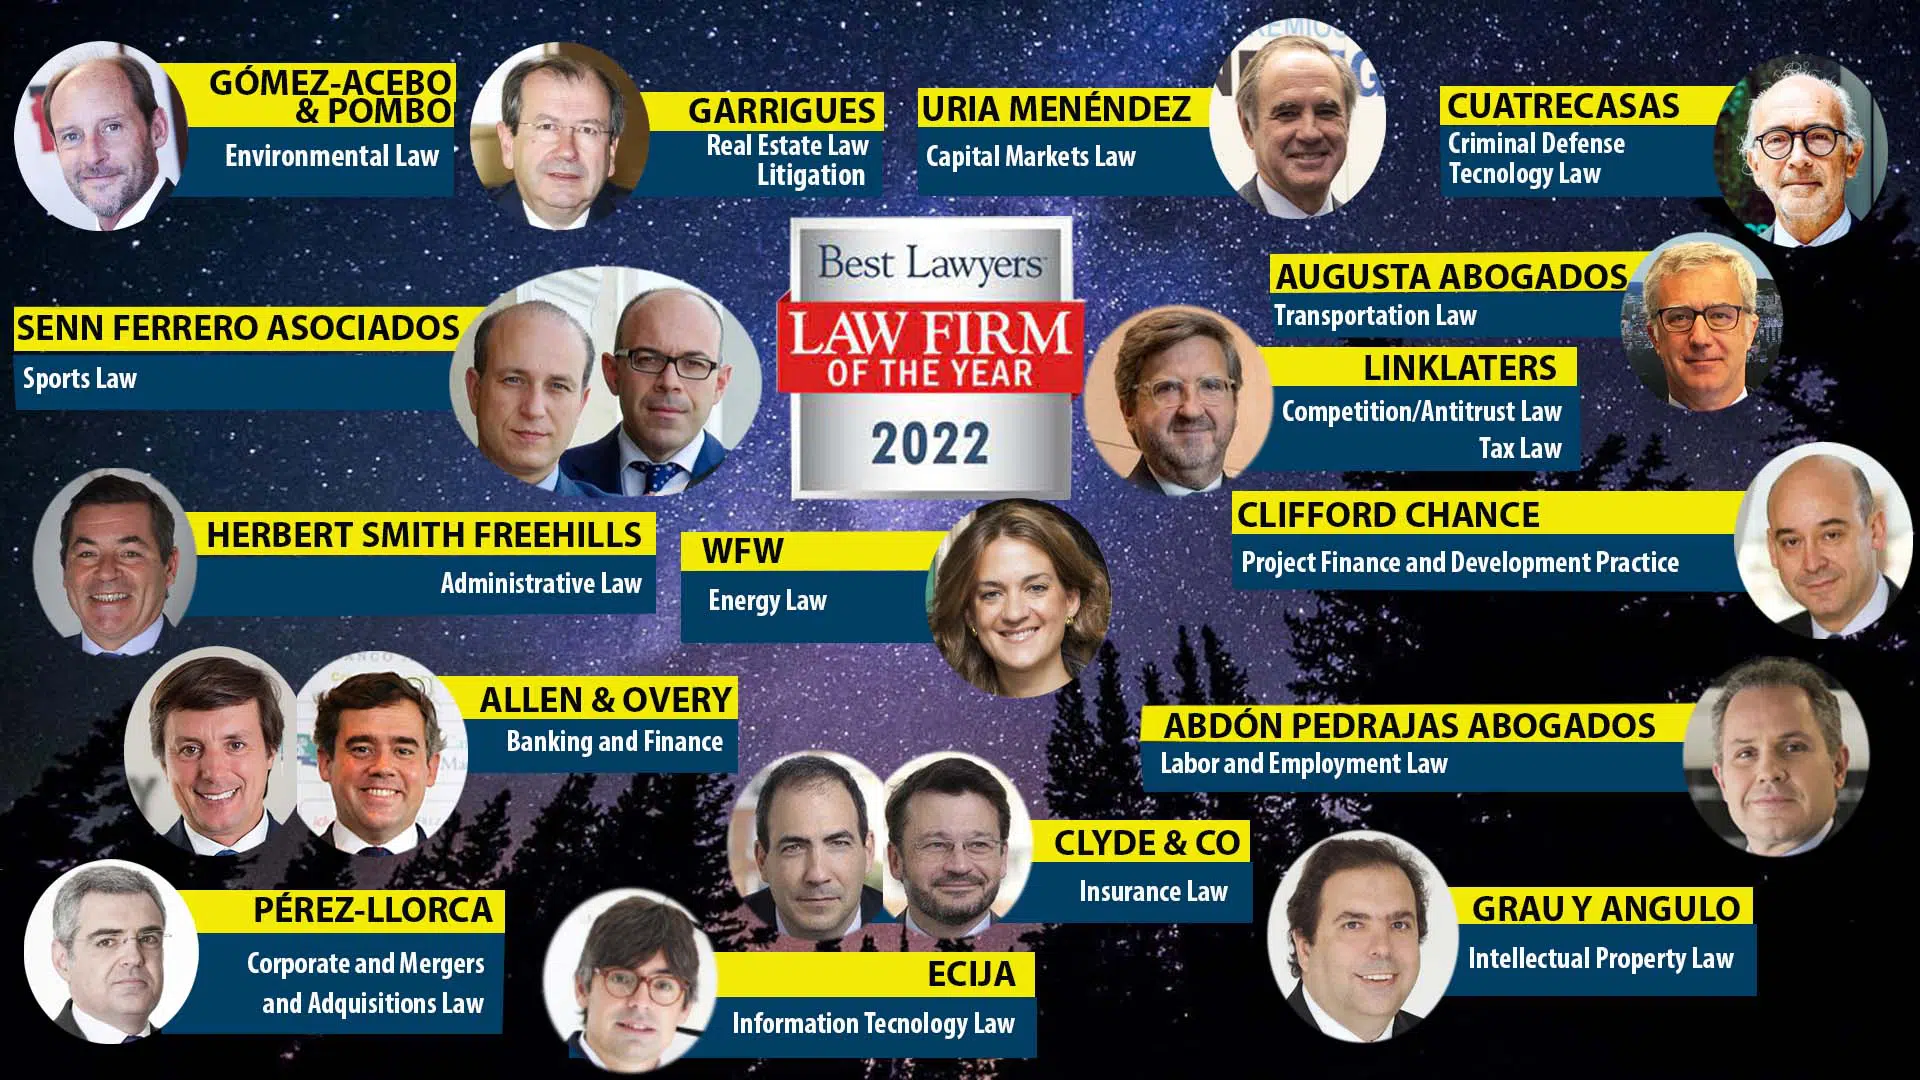 16 despachos de abogados españoles, «Law Firms of the Year 2022» para «Best Lawyers» en 19 áreas de práctica legal